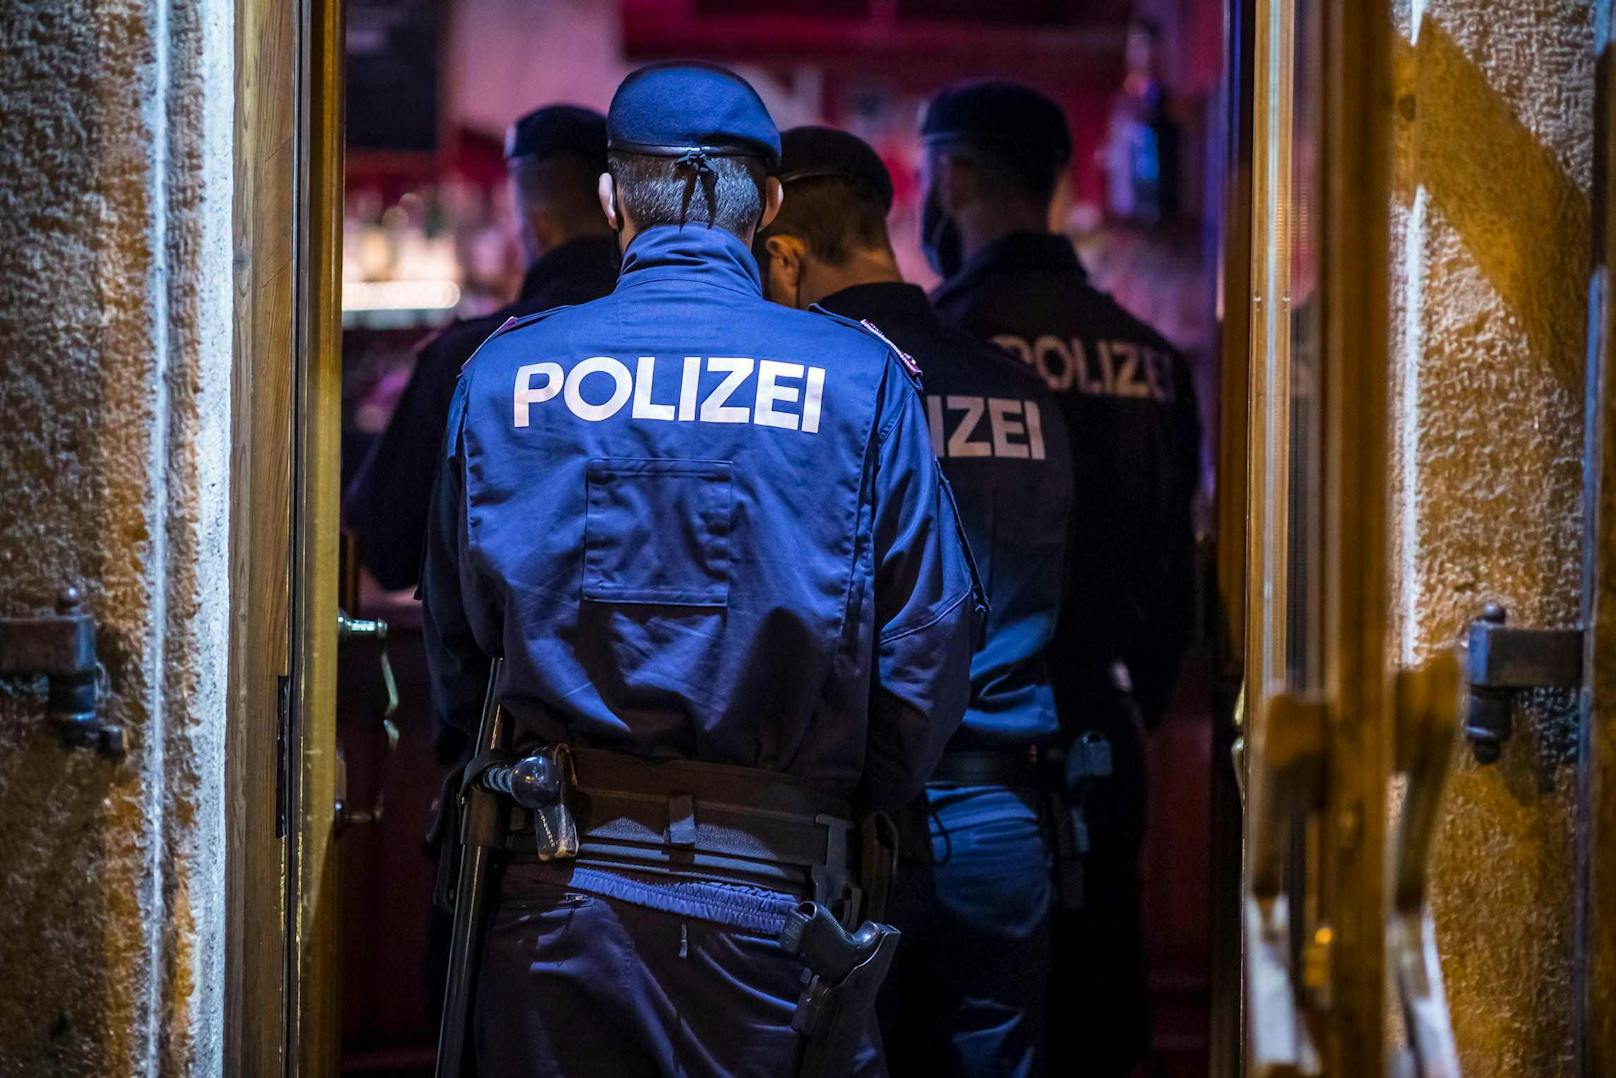 Polizei-Einsatz in einem Wiener Lokal (Symbolfoto)